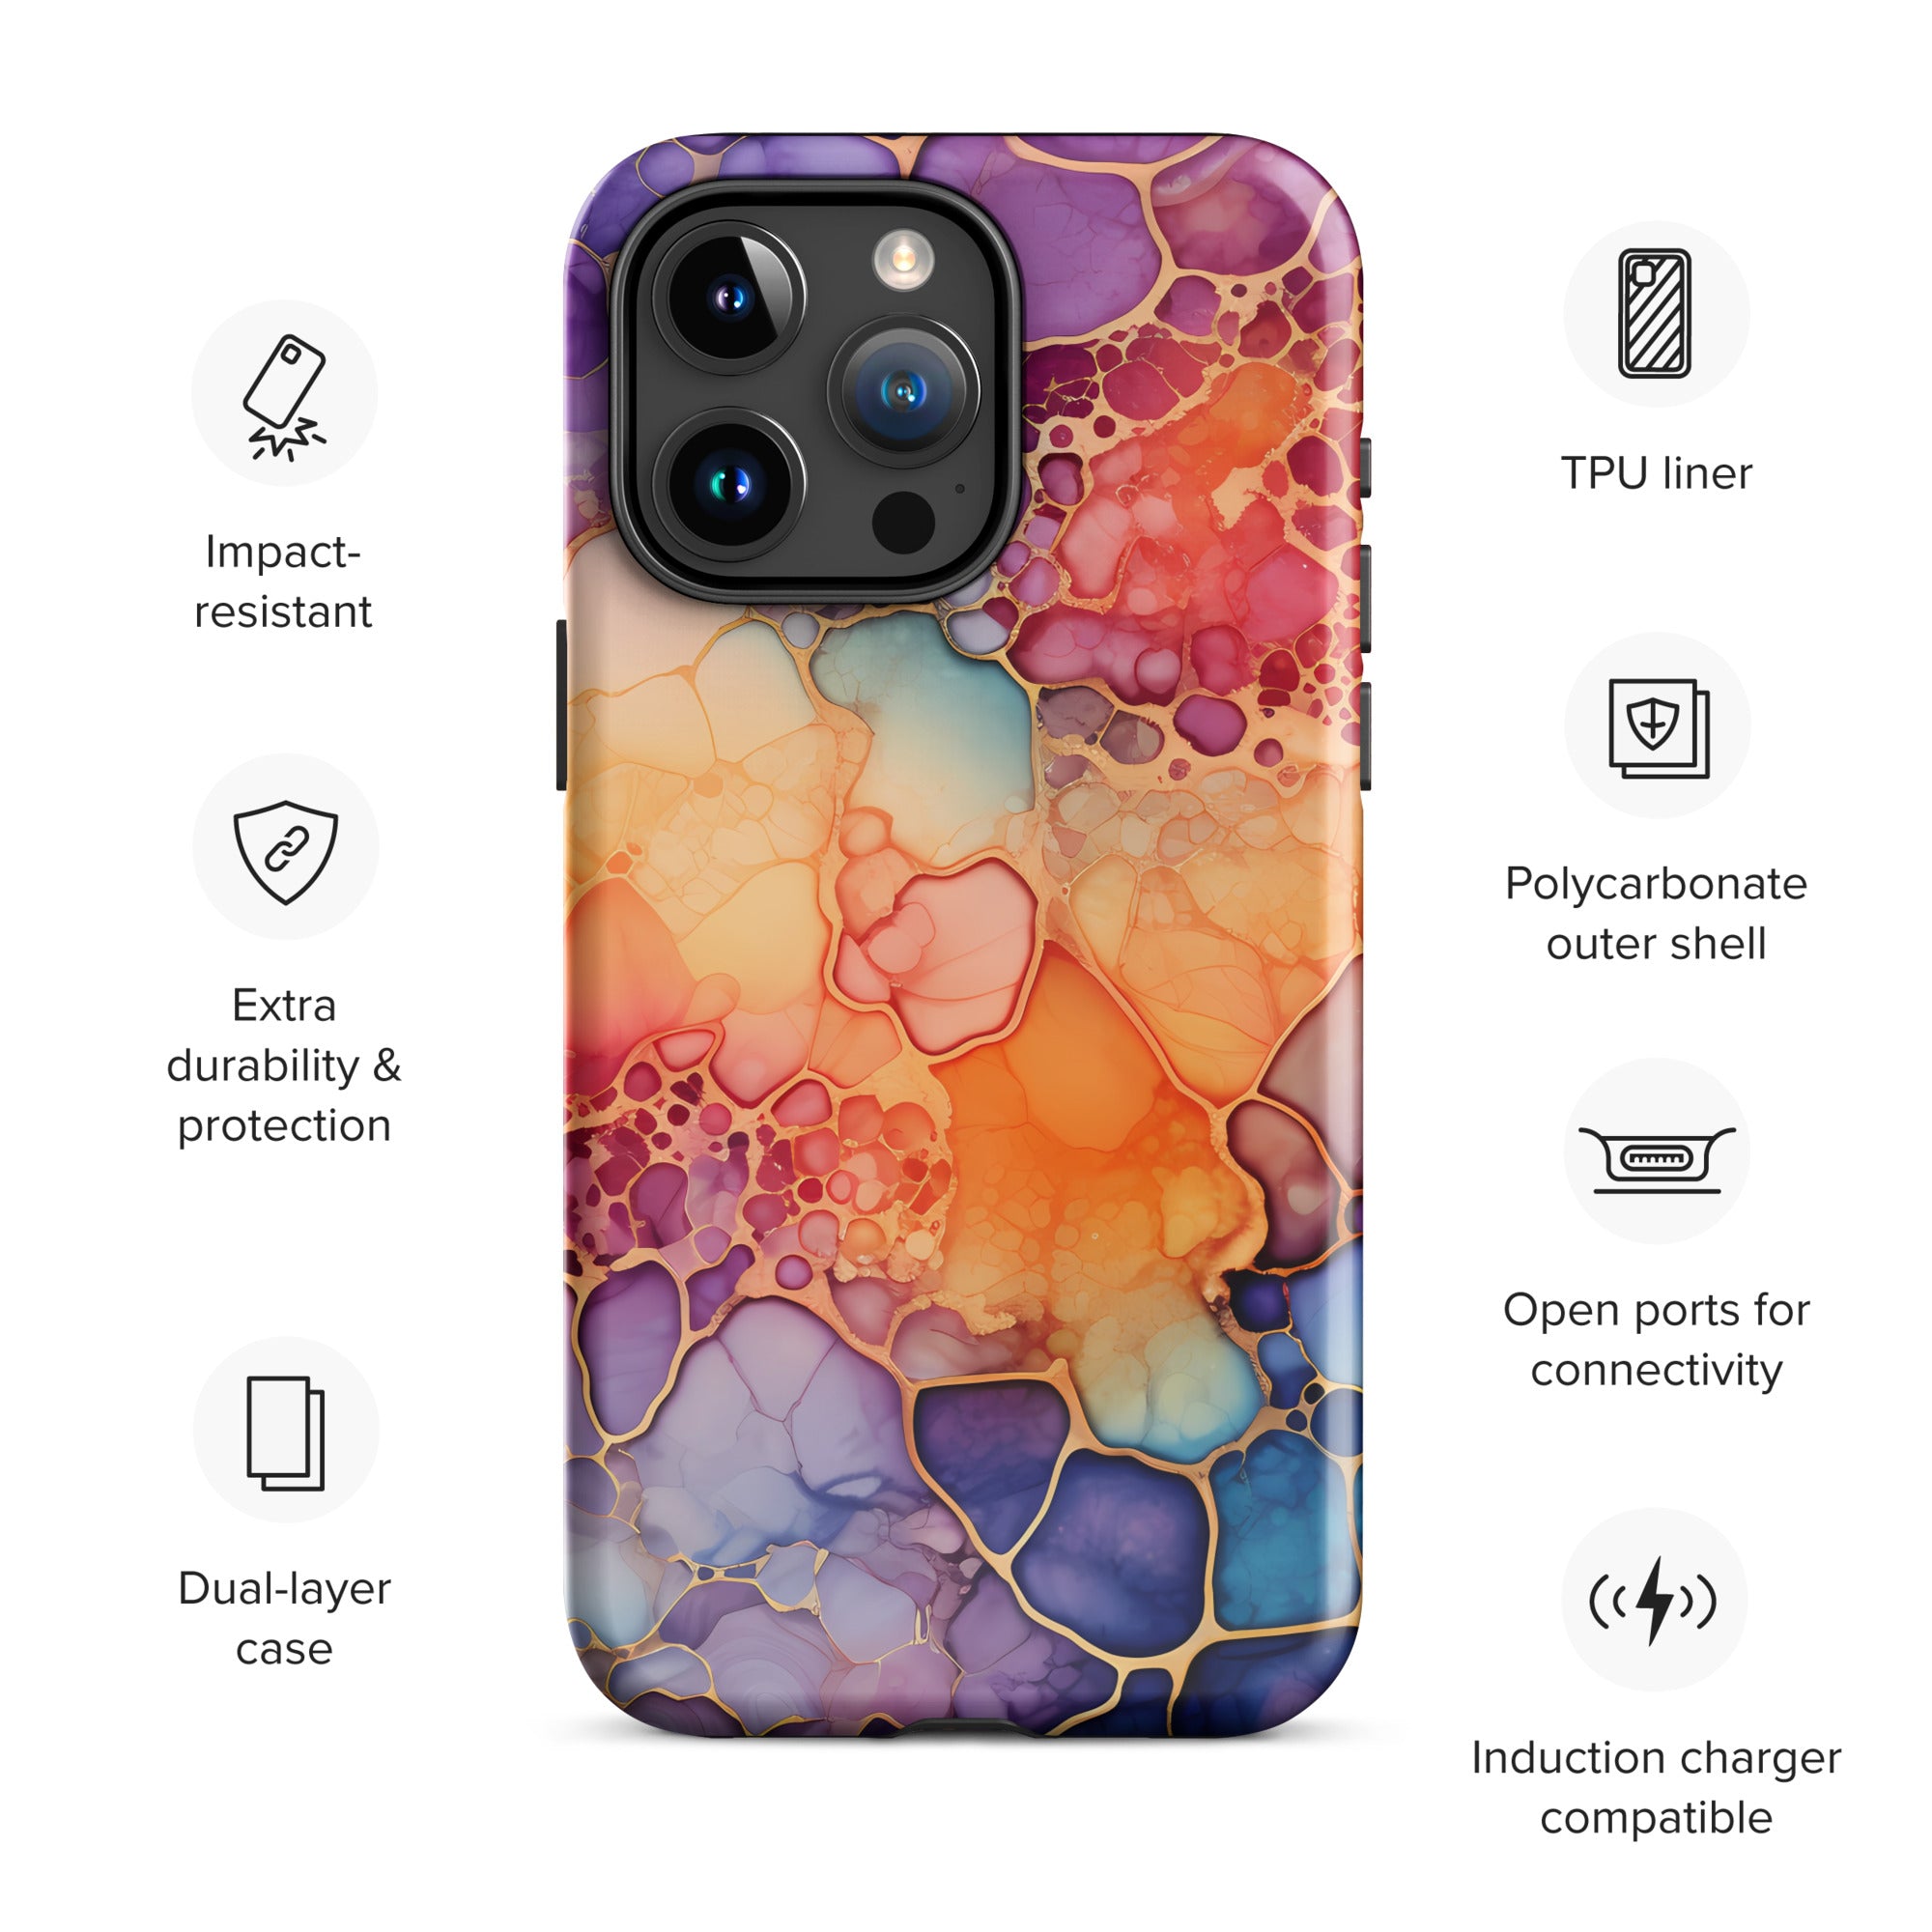 Liquid Crystals iPhone® Tough Case 4 - https://ascensionemporium.net